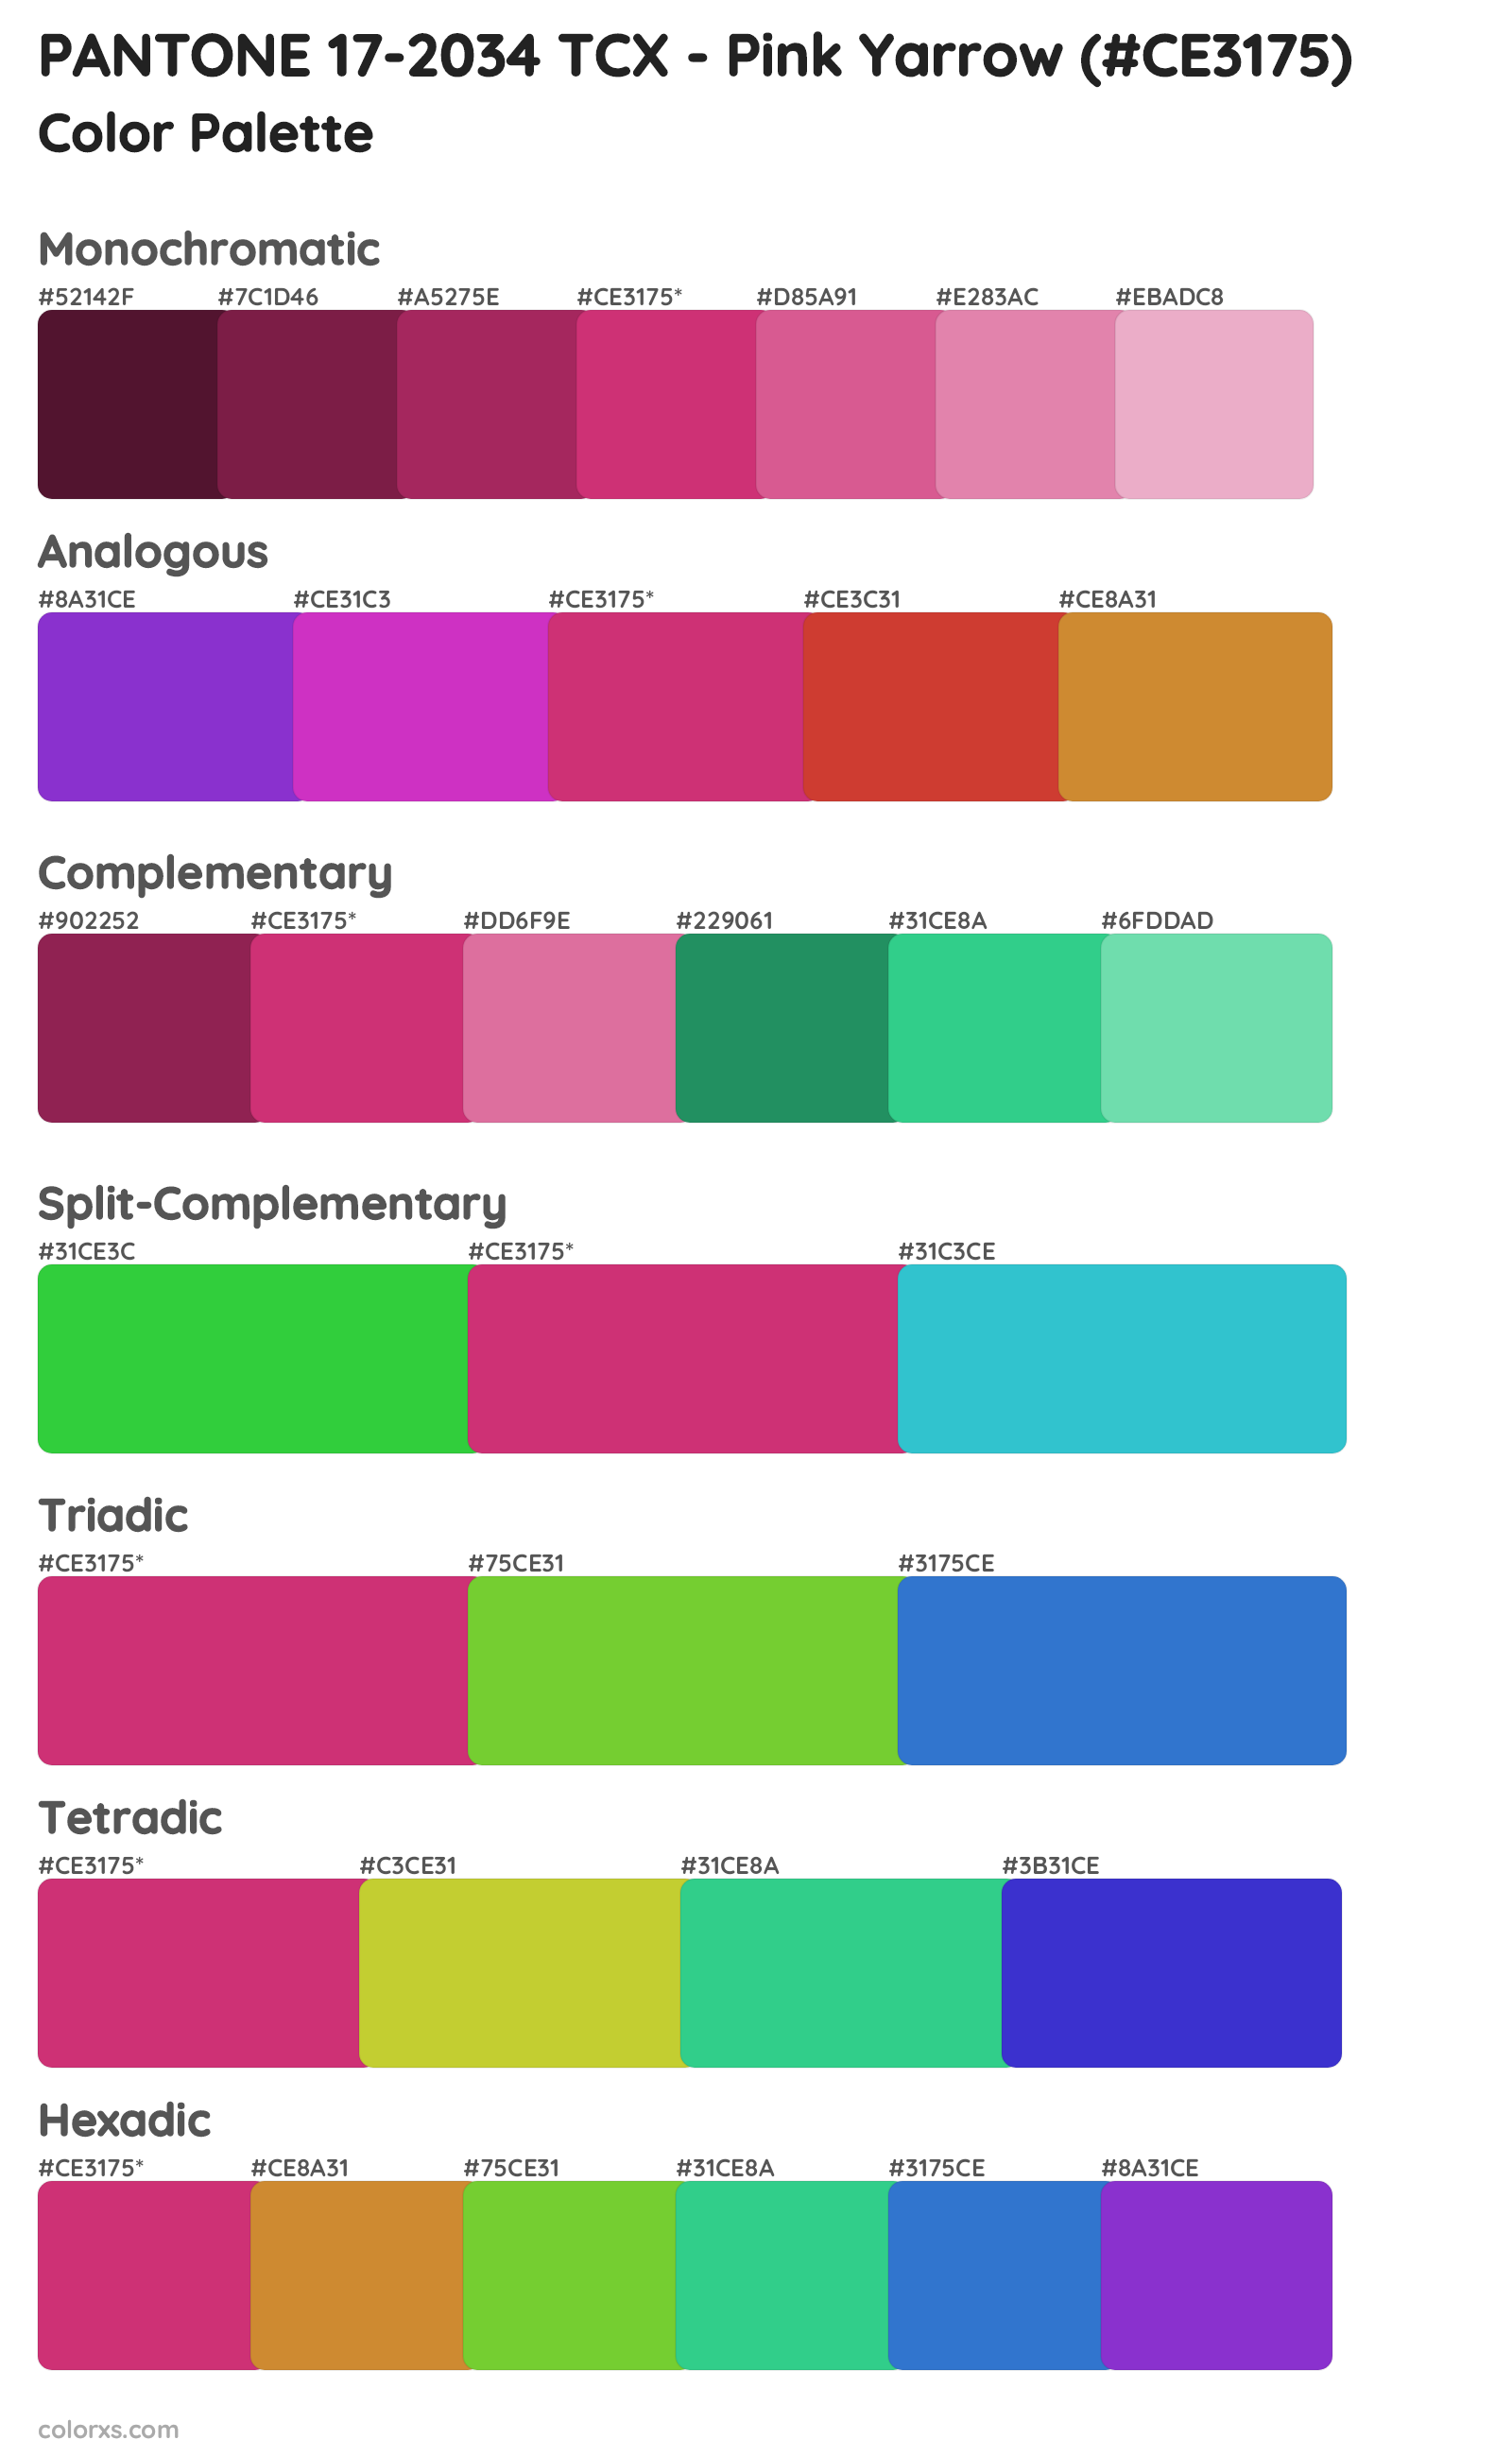 PANTONE 17-2034 TCX - Pink Yarrow Color Scheme Palettes